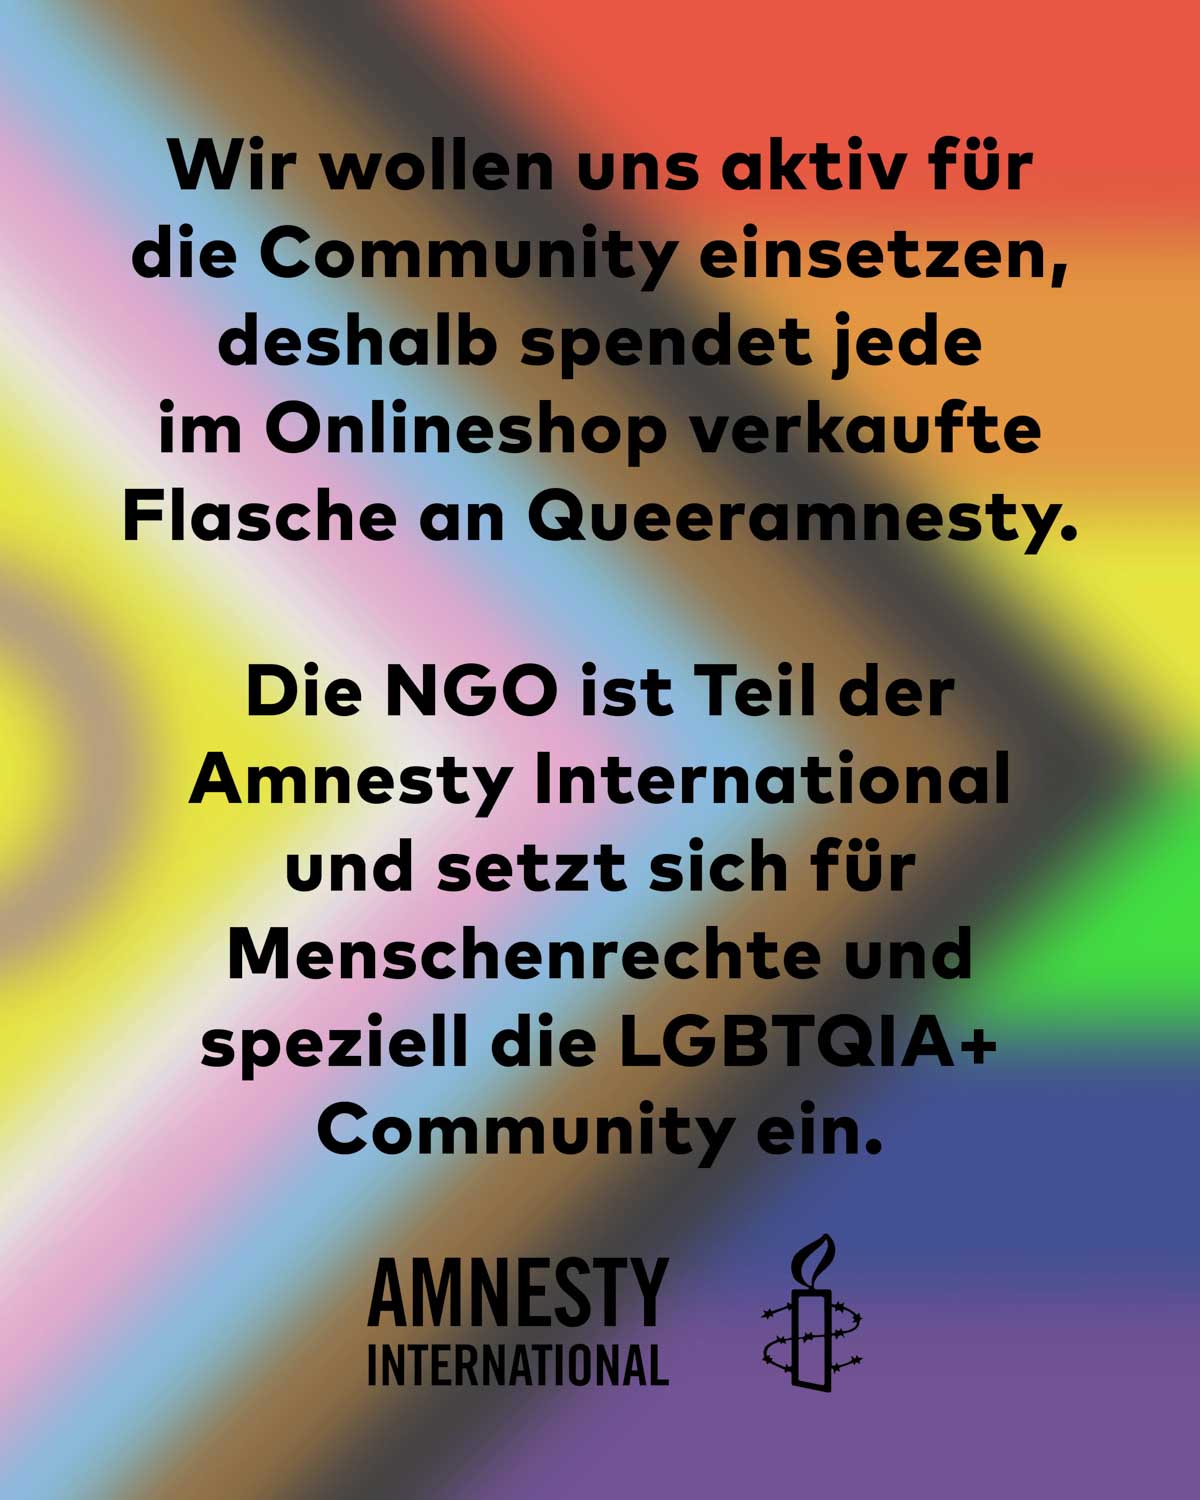 Mit der Pride Edition wollen wir uns aktiv für die Community einsetzen, deshalb spendet jede im Onlineshop verkaufte Flasche an Queeramnesty. Die NGO ist Teil der Amnesty International und setzt sich für Menschenrechte und speziell die LGBTQIA+ Community ein. 